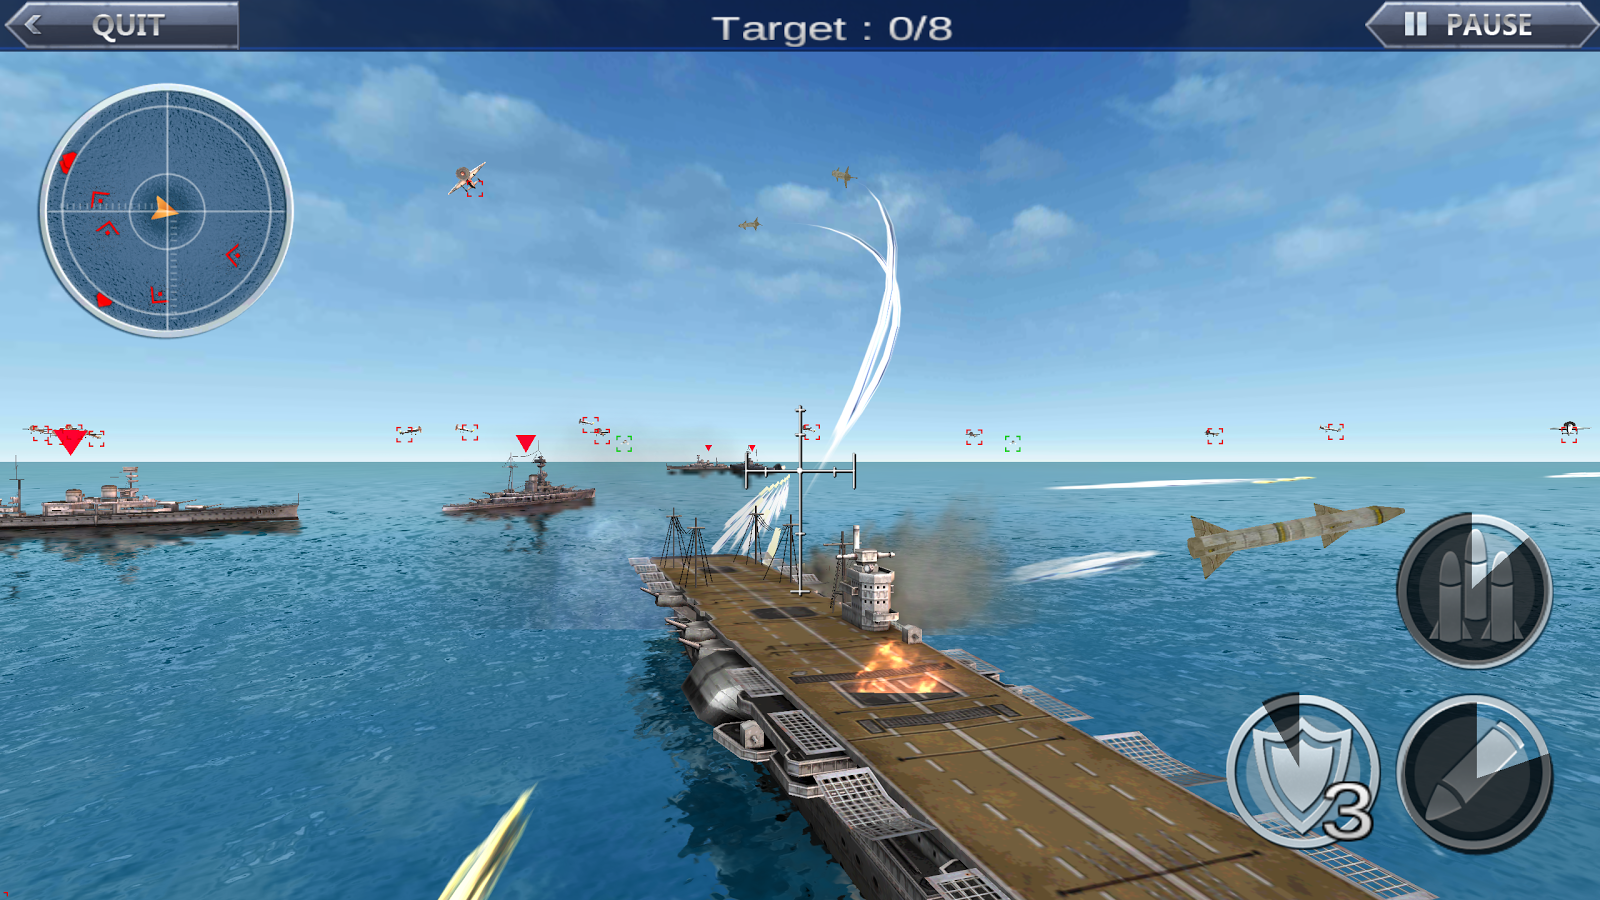 Игра Sea Battle 2. Морской бой корабли игра. Морской бой игра 3д. Морские игры на компьютер. Игры корабли пушки